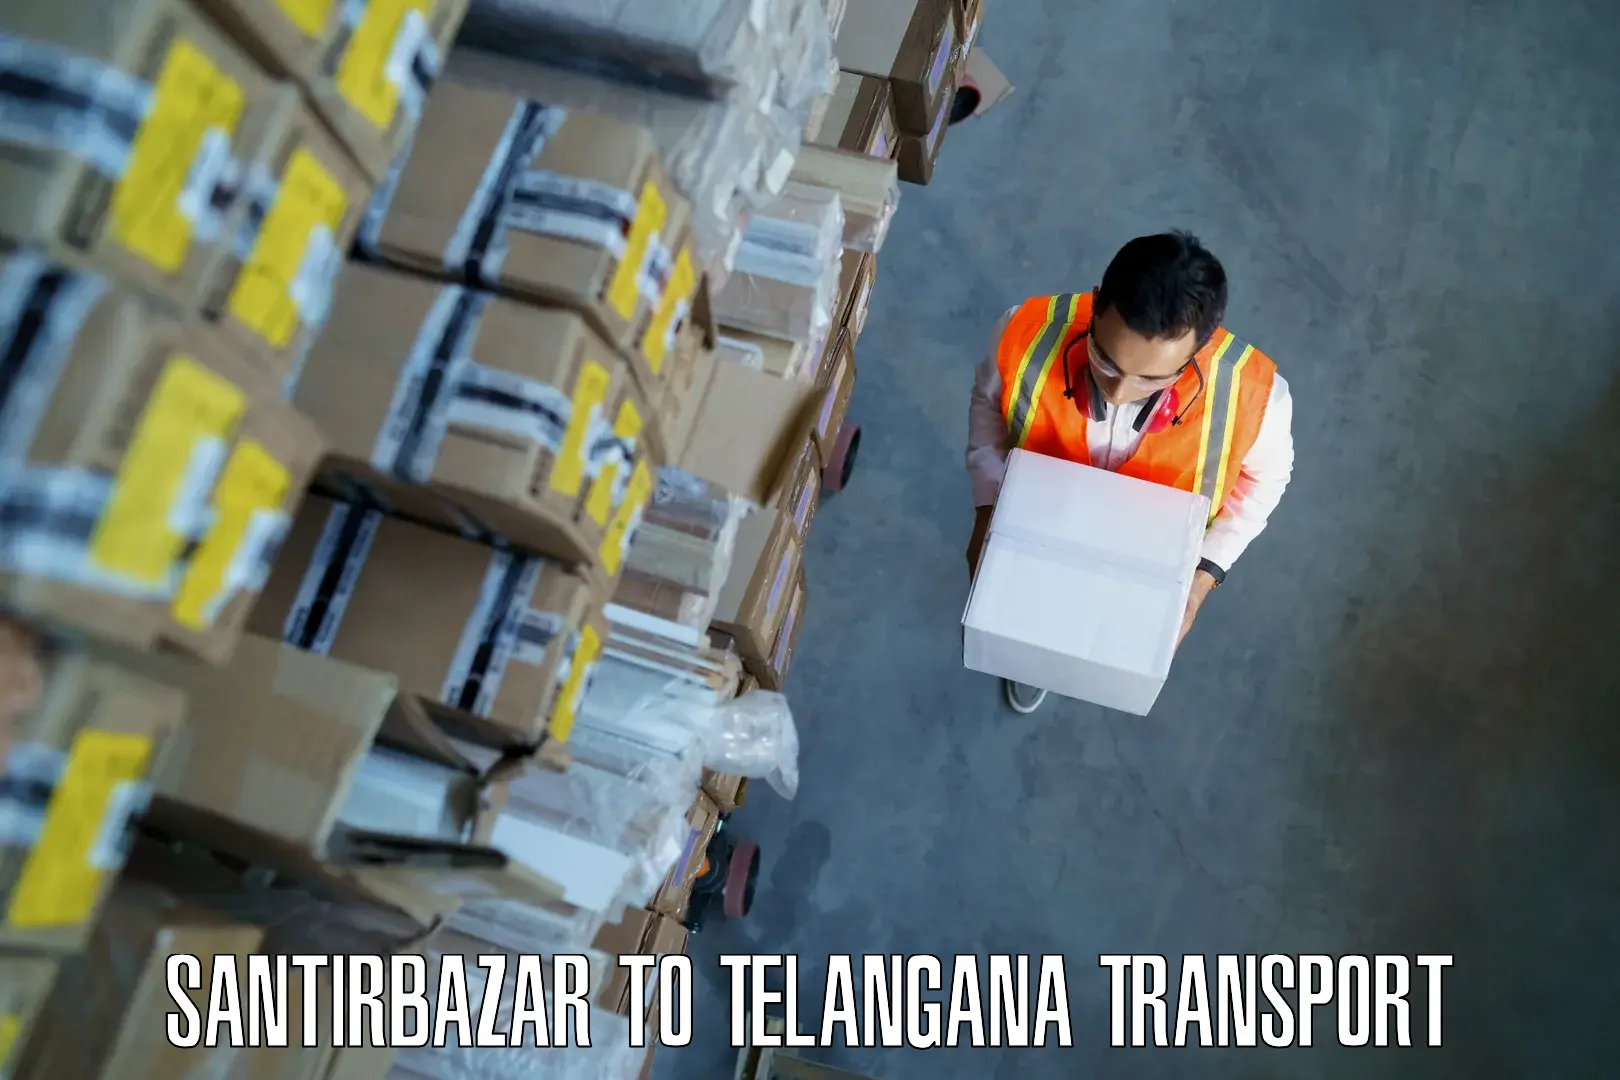 International cargo transportation services Santirbazar to Mahabubnagar